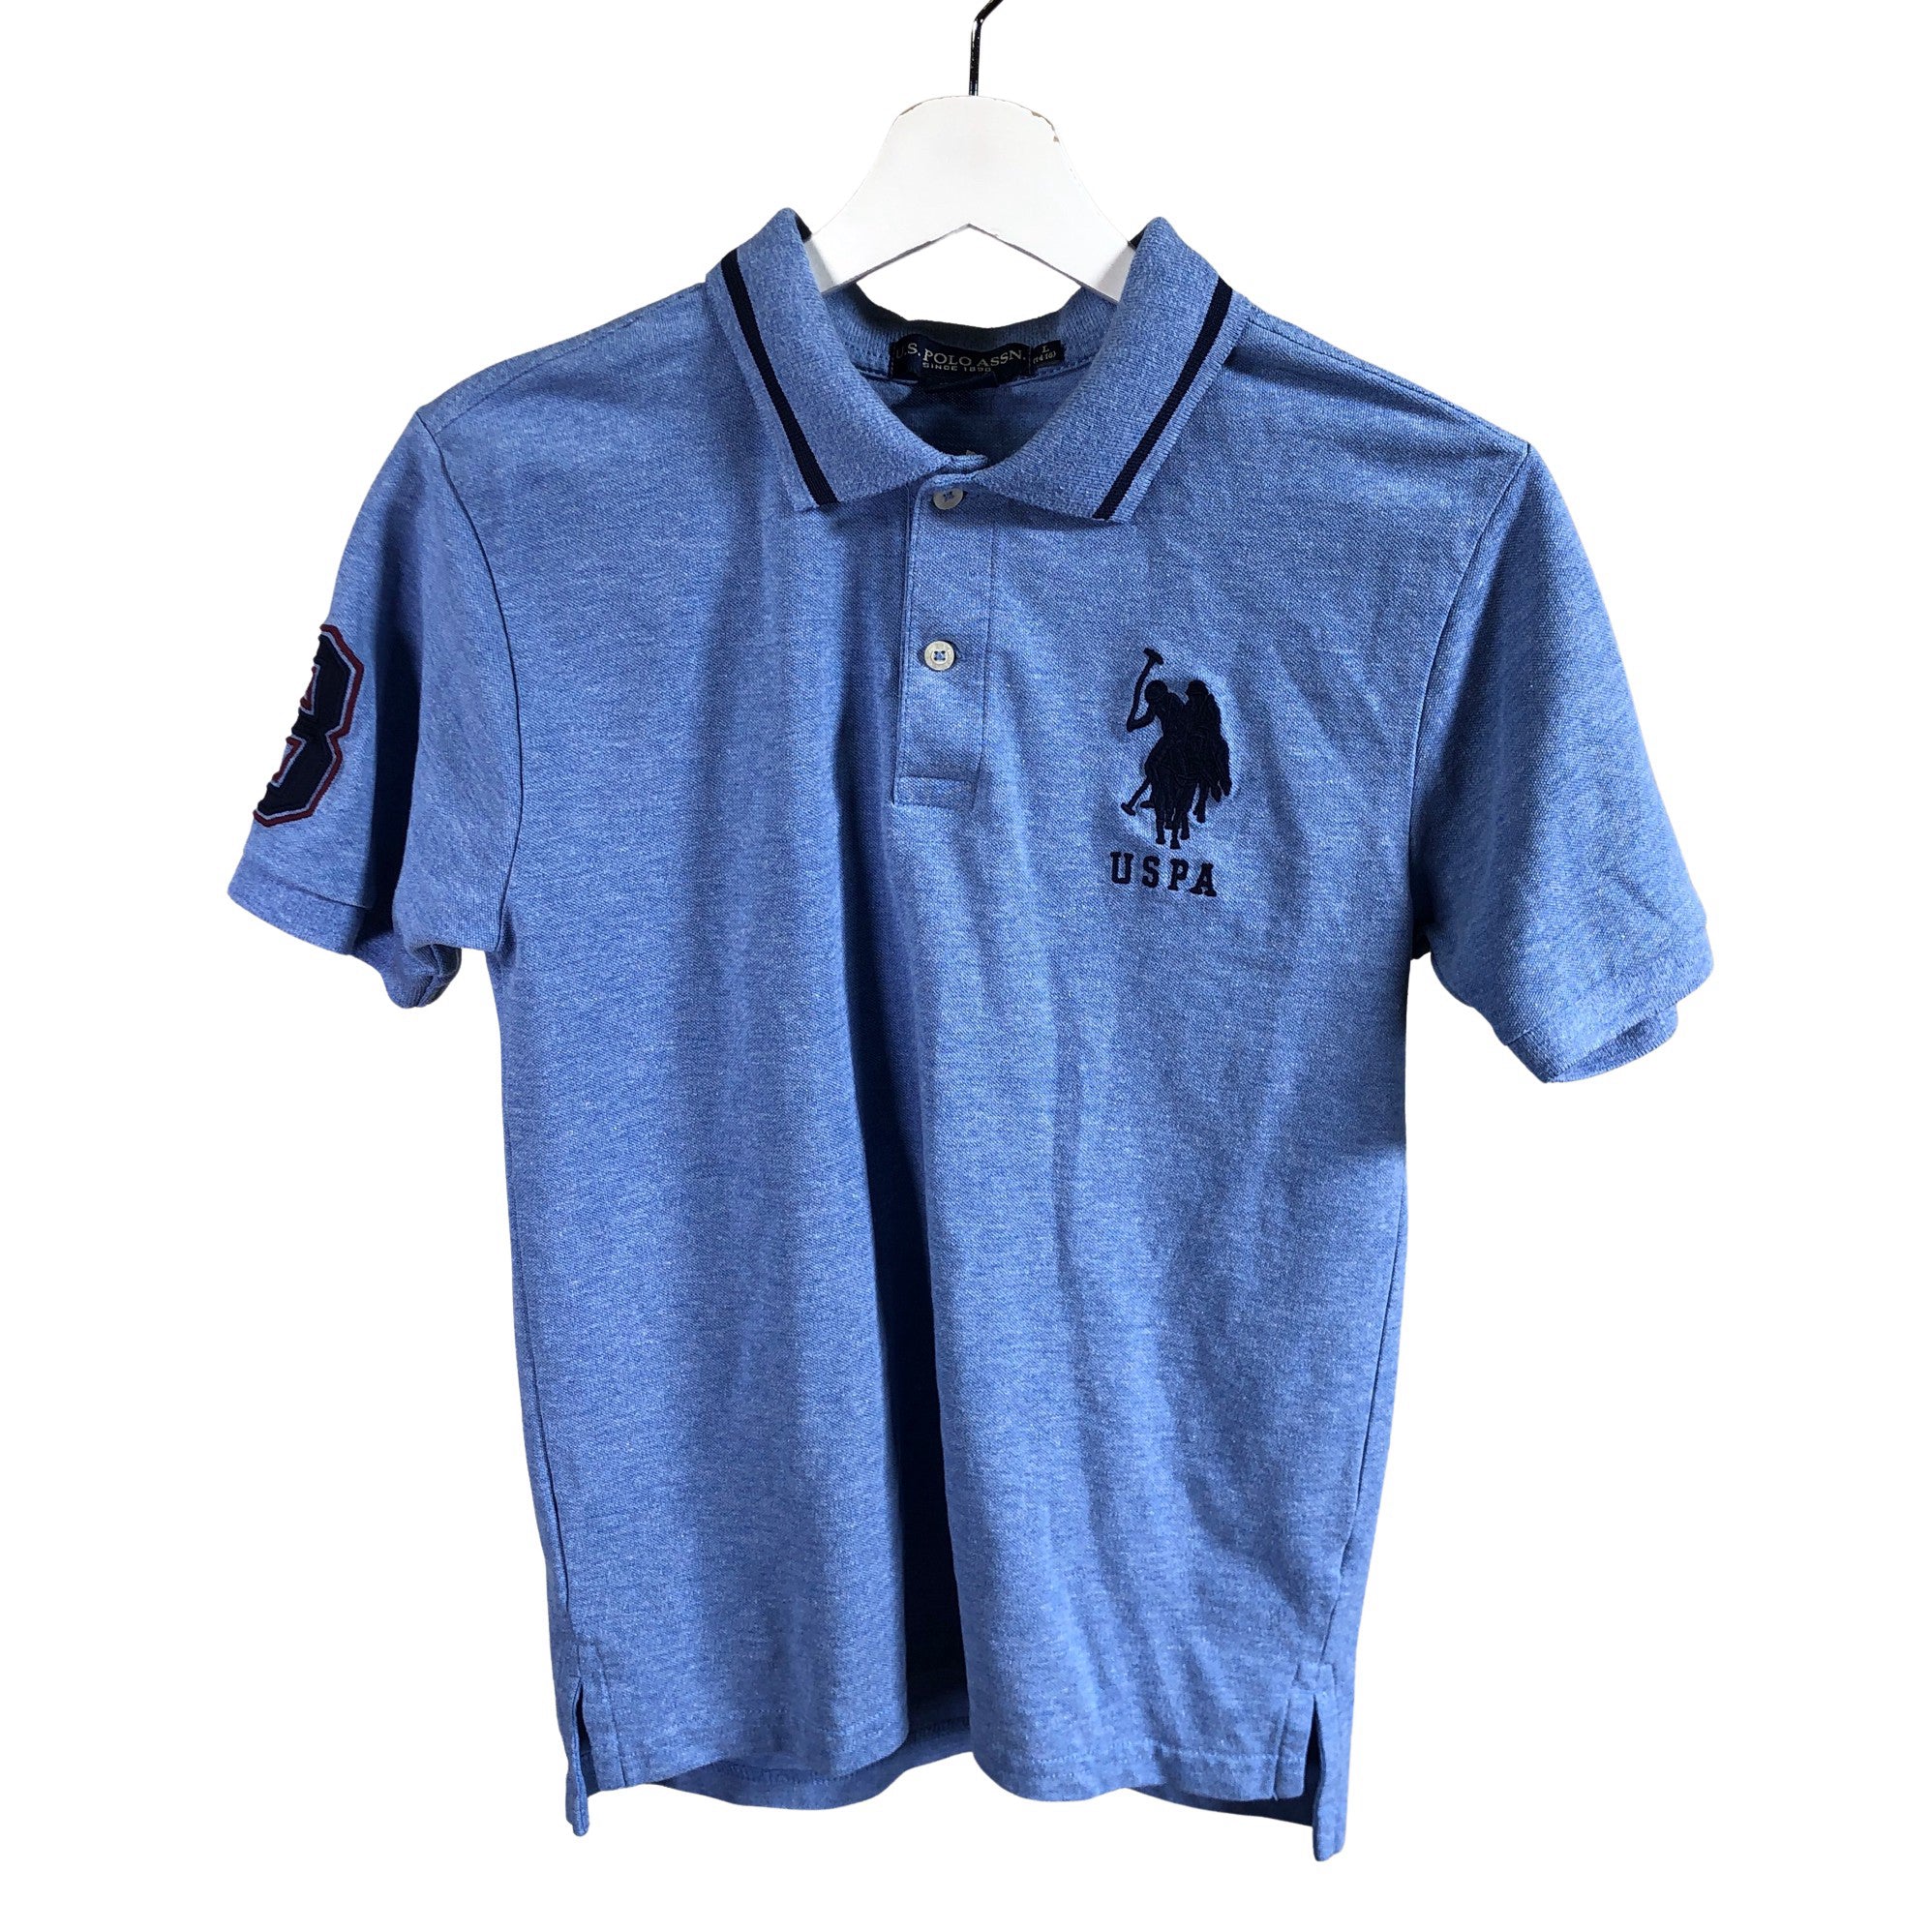 Boys' Ralph Lauren Polo shirt, size 158 - 164 (Light blue) | Emmy